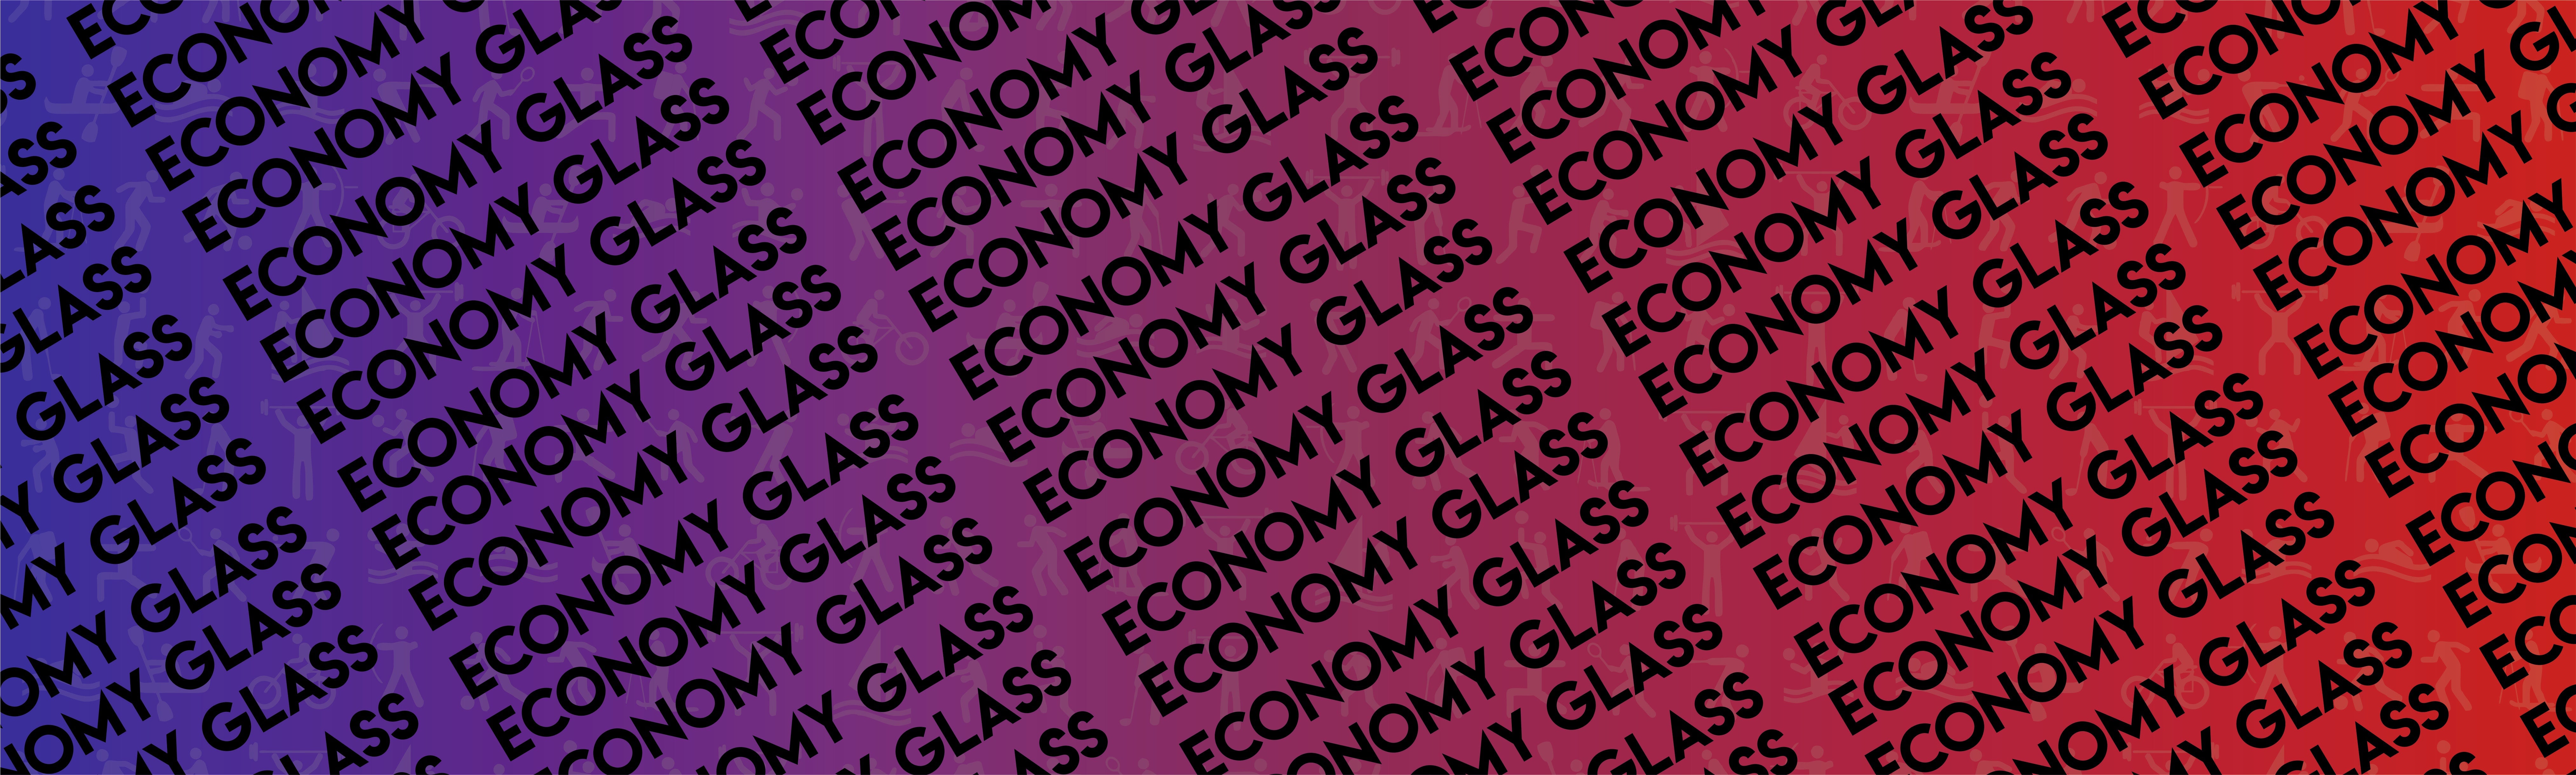 Economy Glass